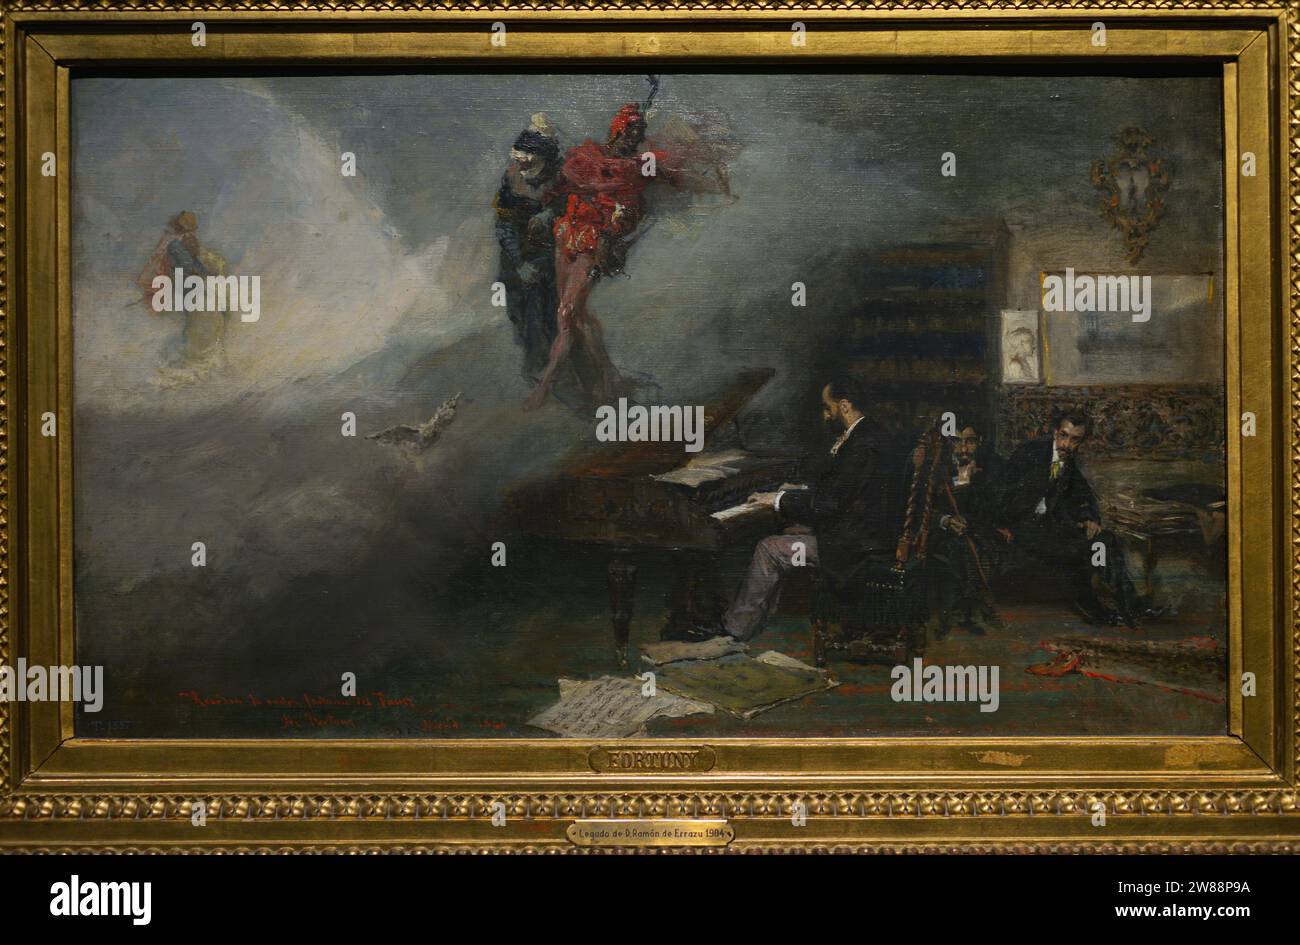 Mariano Fortuny Marsal (1838-1874) Peintre espagnol. Fantasy sur Faust, 1866. Huile sur toile, 40 x 69 cm. Musée du Prado. Madrid. Espagne. Banque D'Images